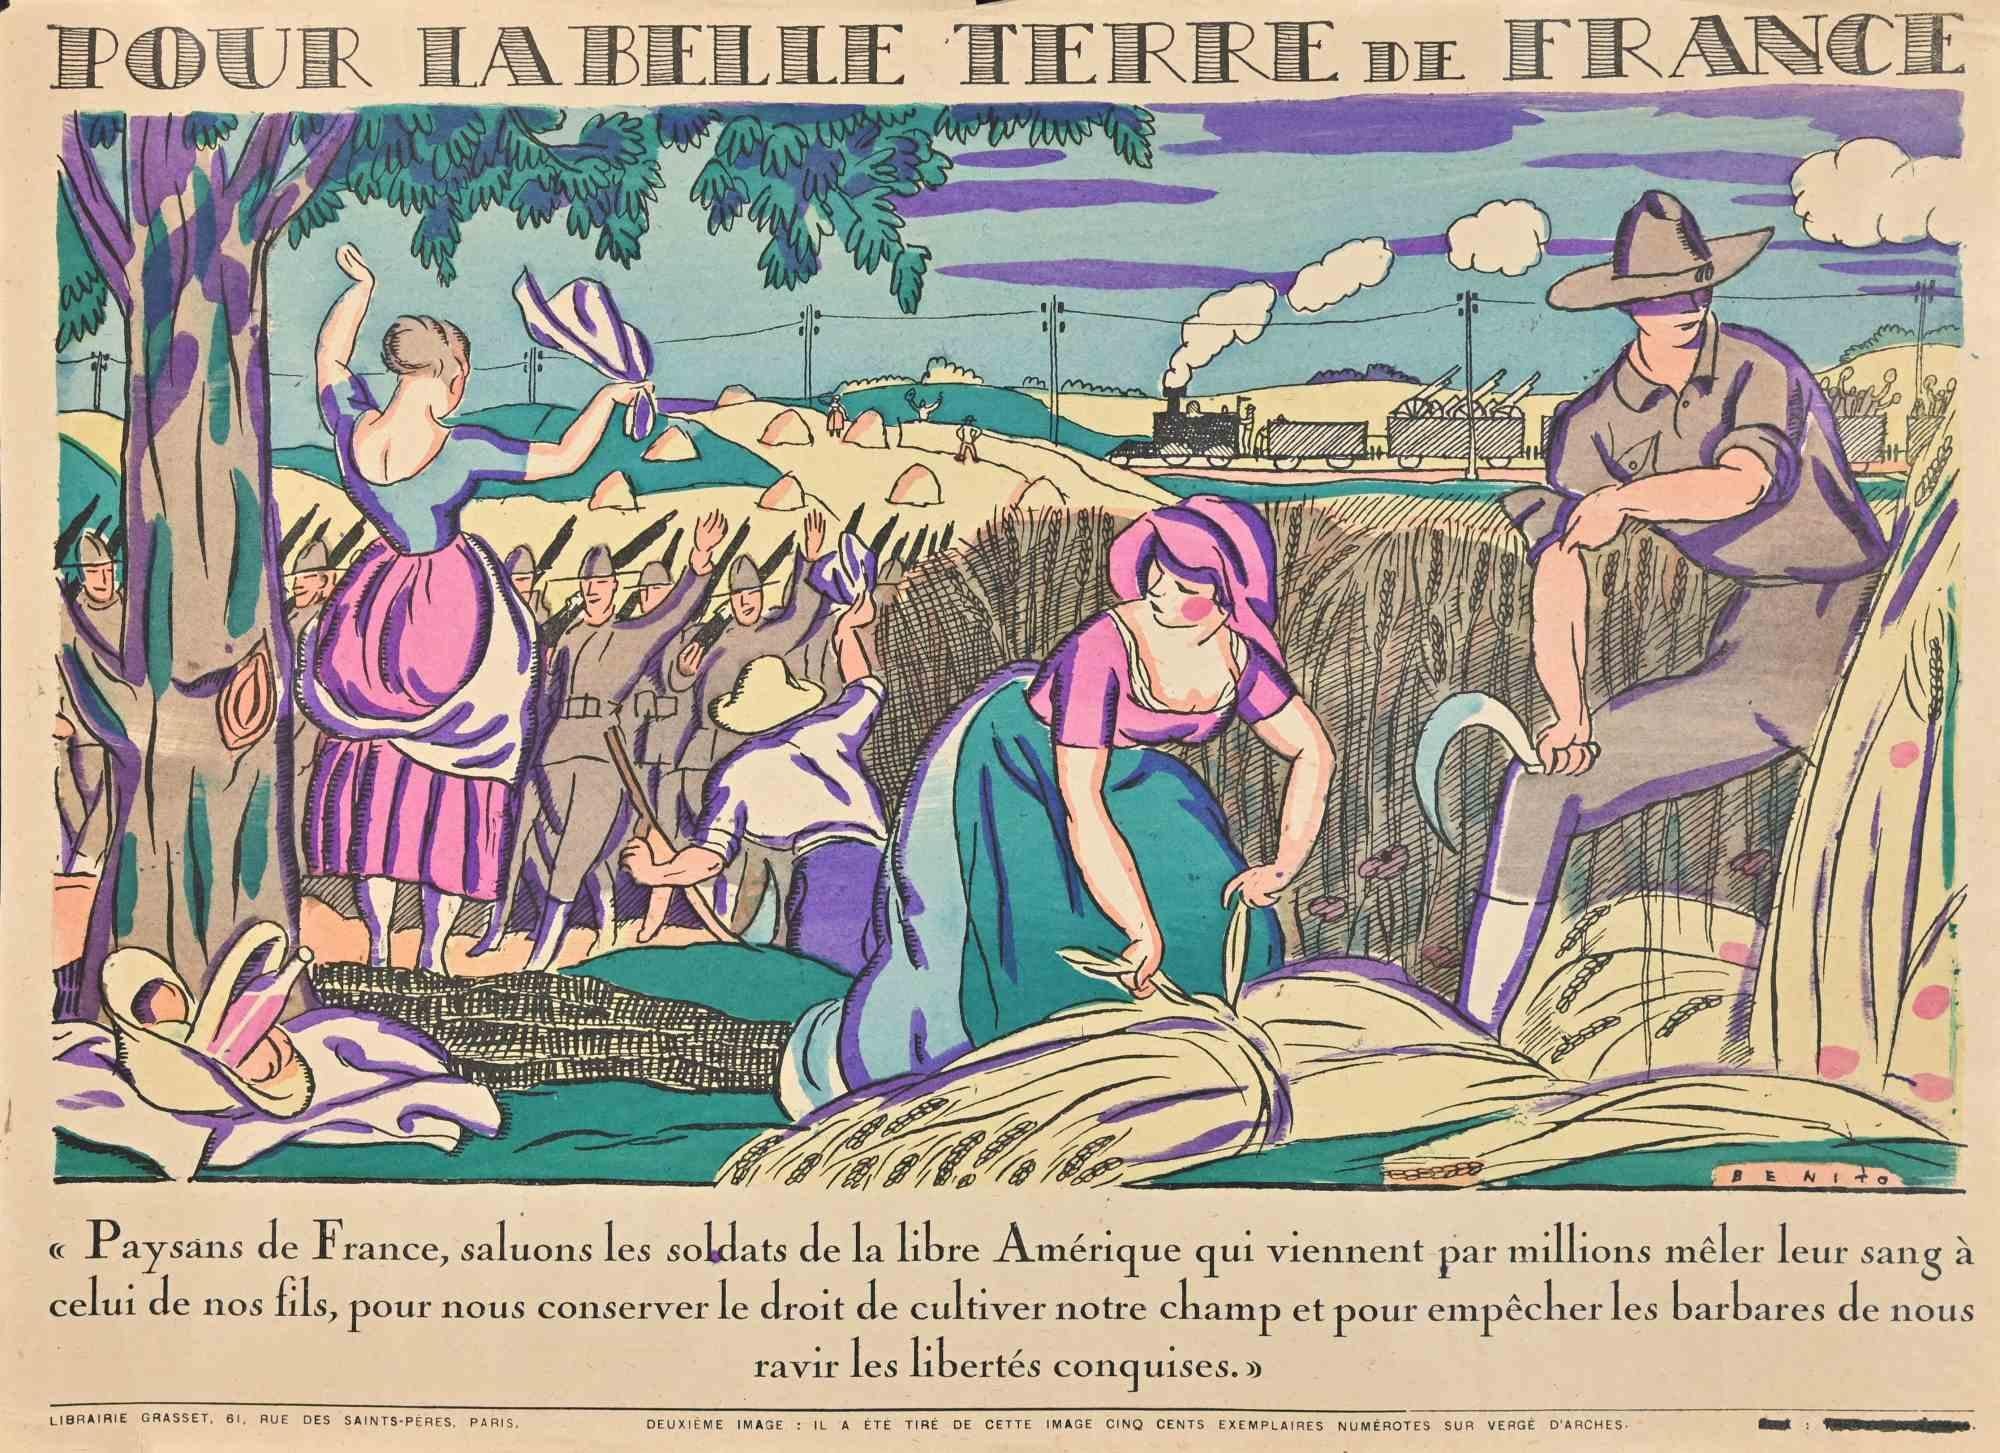 Pour la belle terre de France est une gravure sur bois originale de Benito (Edmond Garcia, 1891-1961) réalisée au début du 20e siècle.

Bon état.

Édition de 500 exemplaires, non numérotés.

L'œuvre d'art est représentée par des traits forts dans